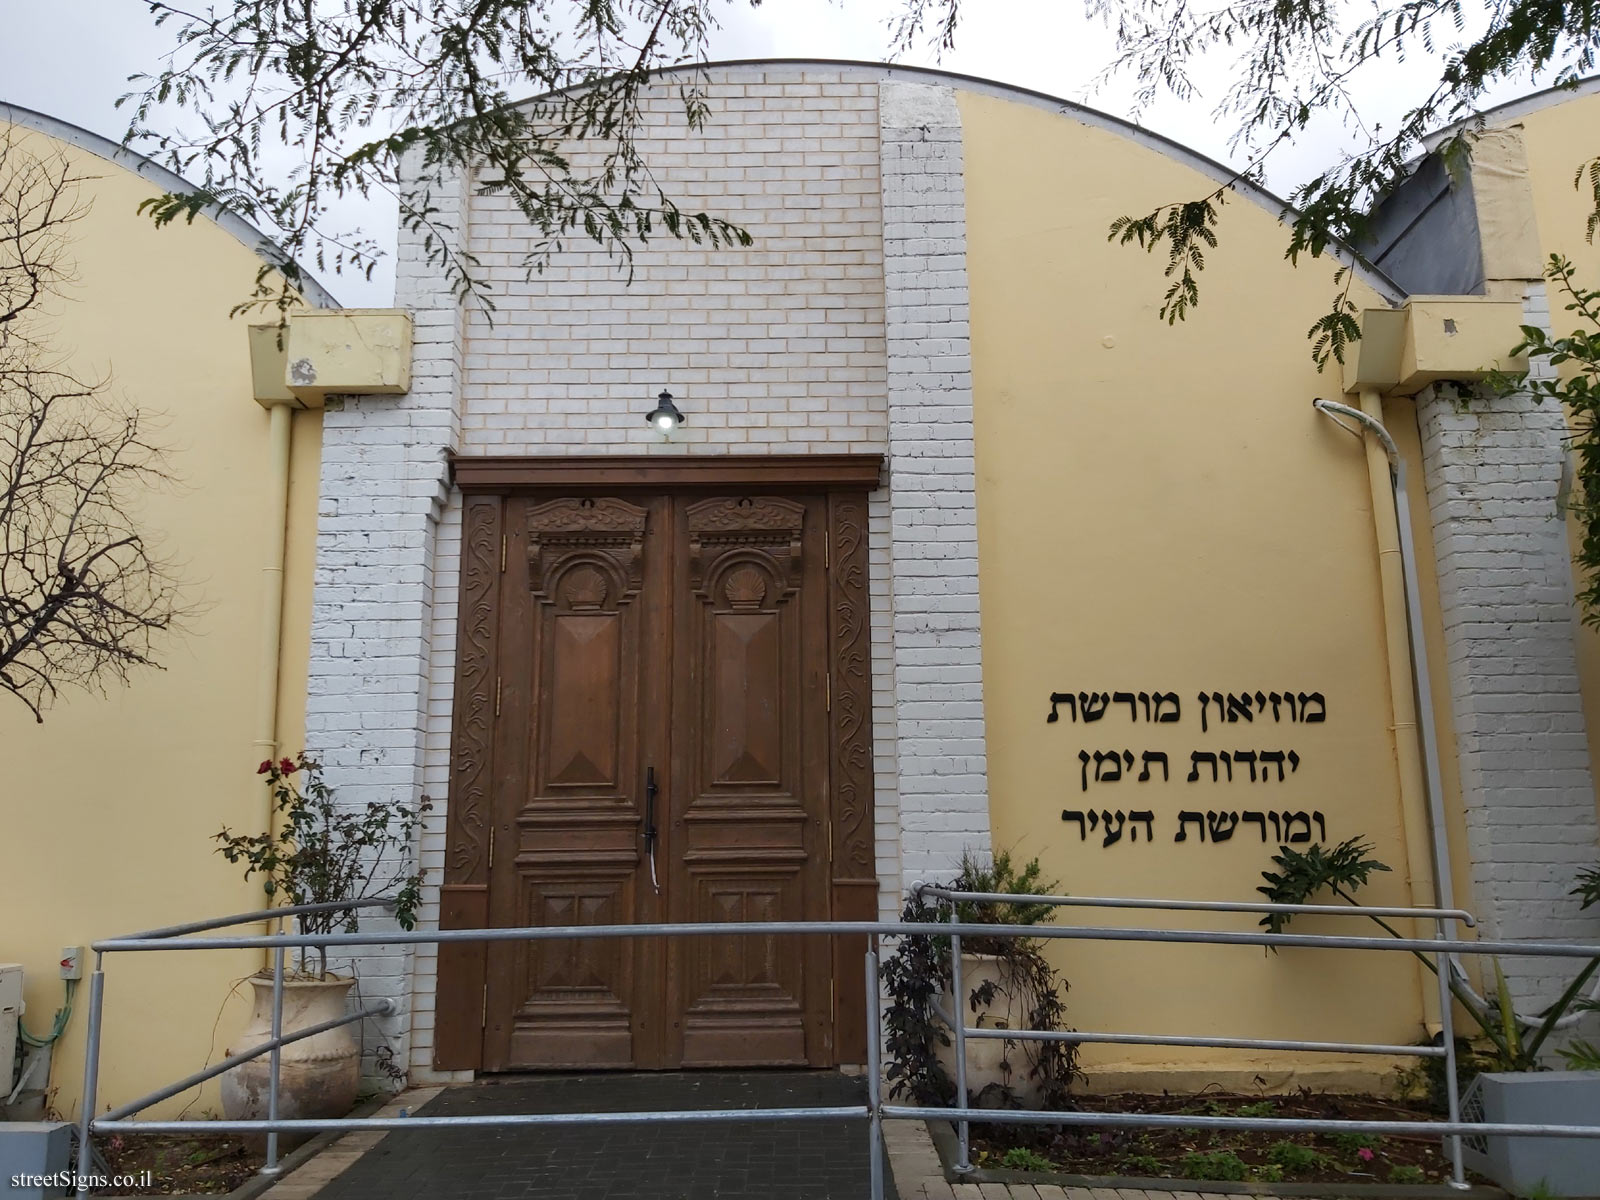 Heritage Sites in Israel - Yemenite Jewish Heritage House and Yad Labanim House - Ha-Rav Shalom Shabazi St 41, Rosh Haayin, Israel